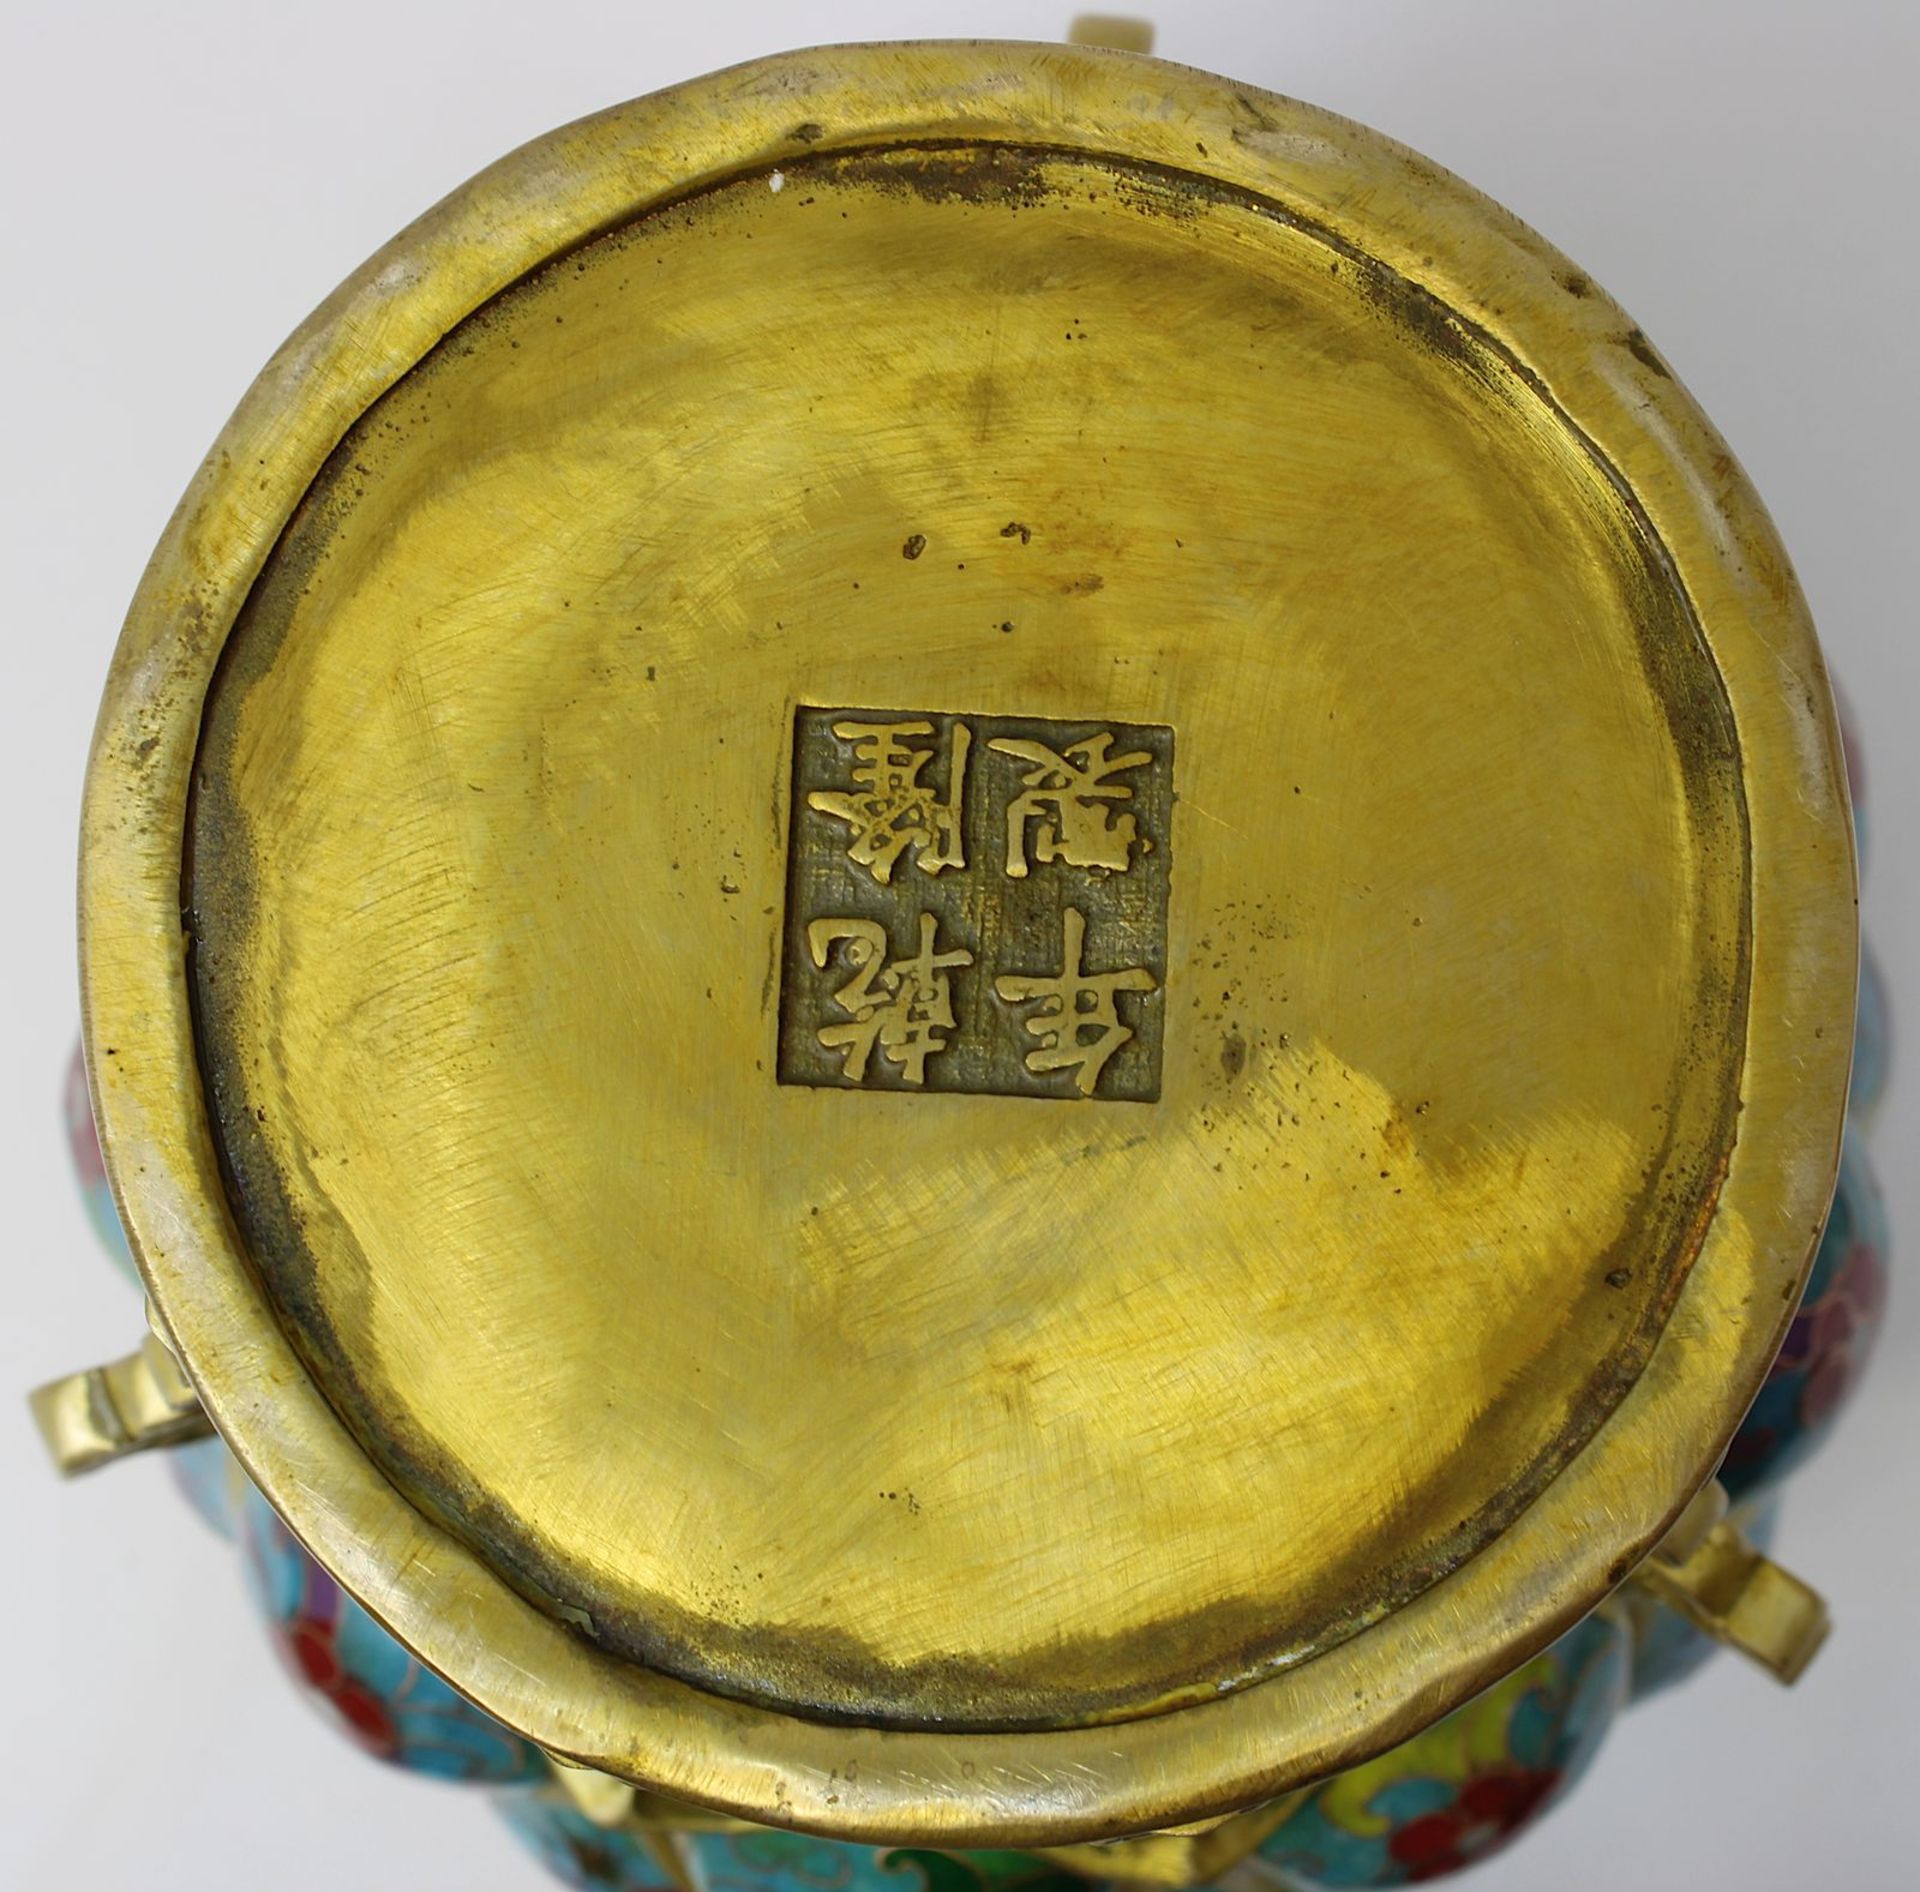 Chinesischer Räucherkoro aus Bronze, China erste Hälfte 20 Jh., balusterförmiger Korpus mit - Bild 5 aus 5